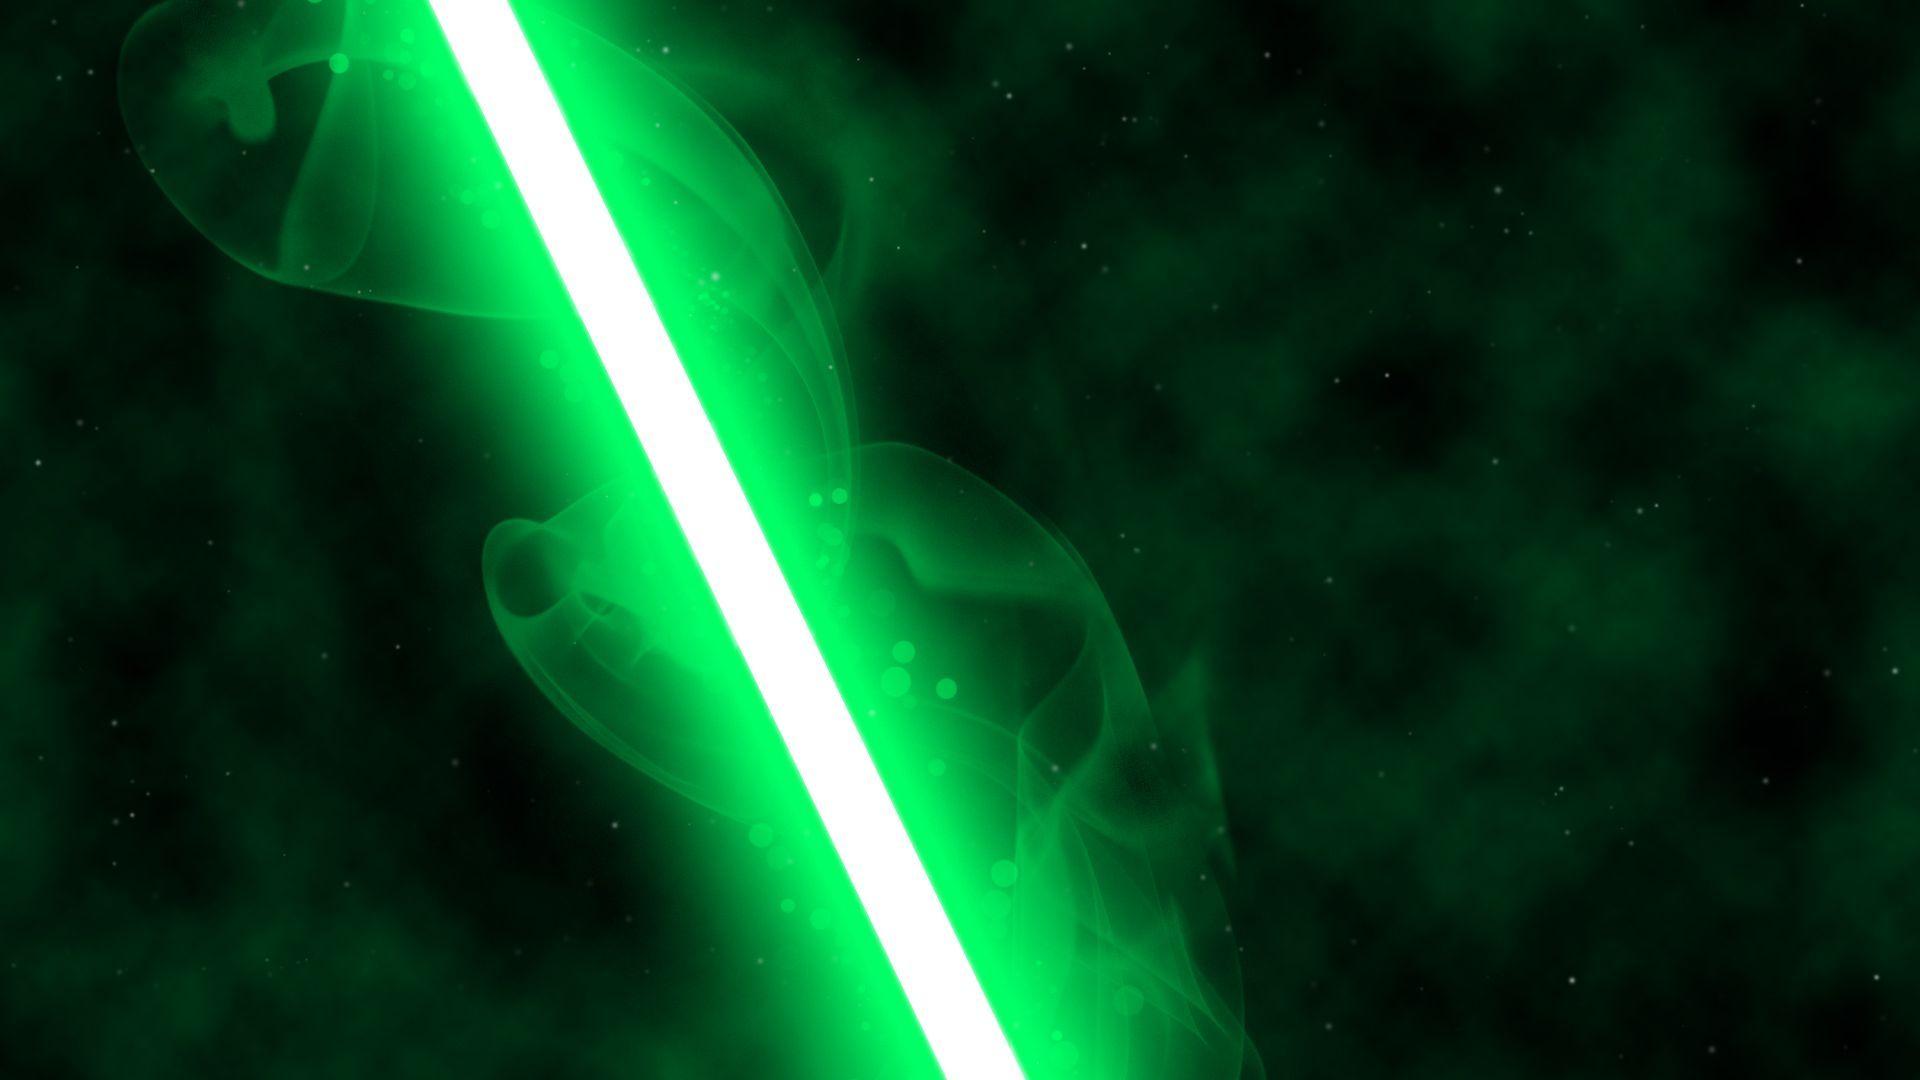 Green Lightsaber by nerfAvari